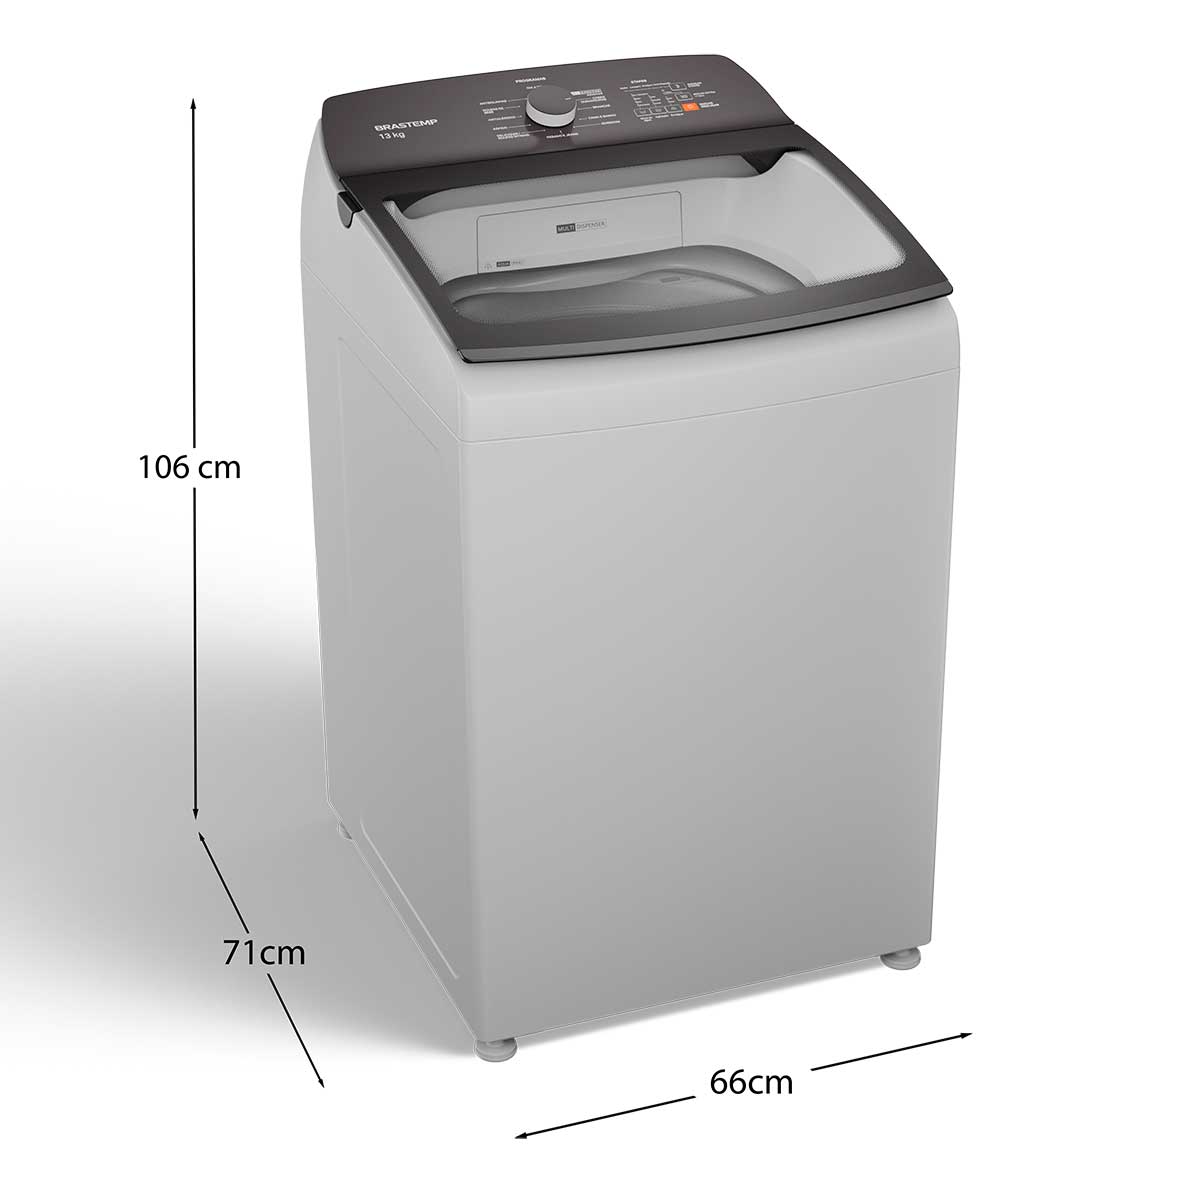 lavadora-brastemp-bwk13ab-13kg-b-110v-10.jpg